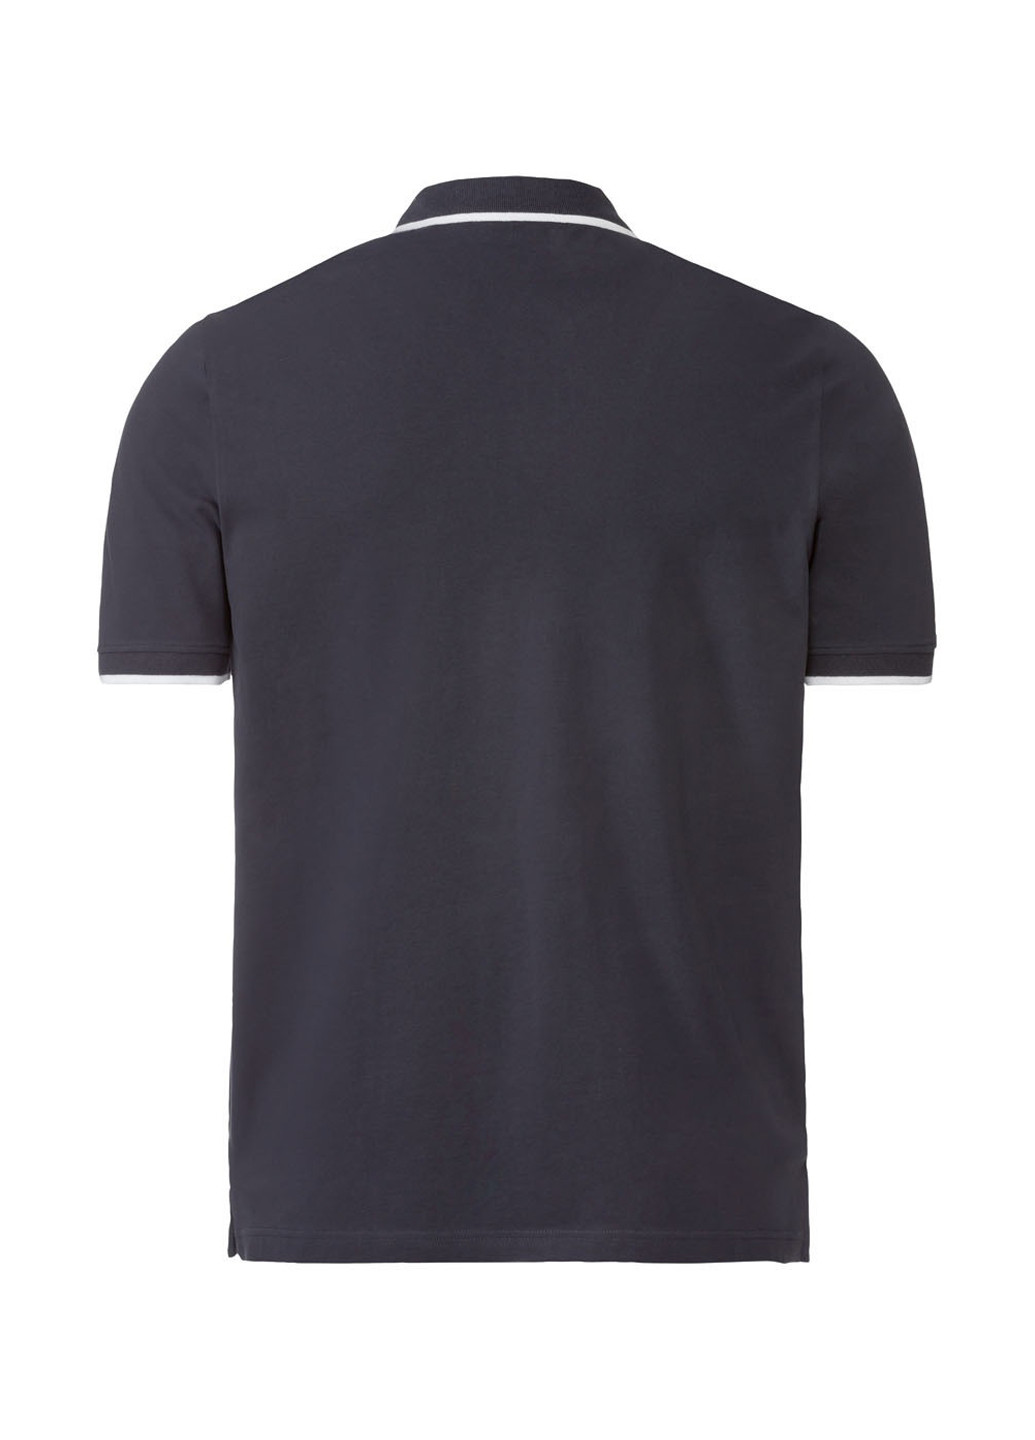 Черная футболка-поло для мужчин Livergy однотонная